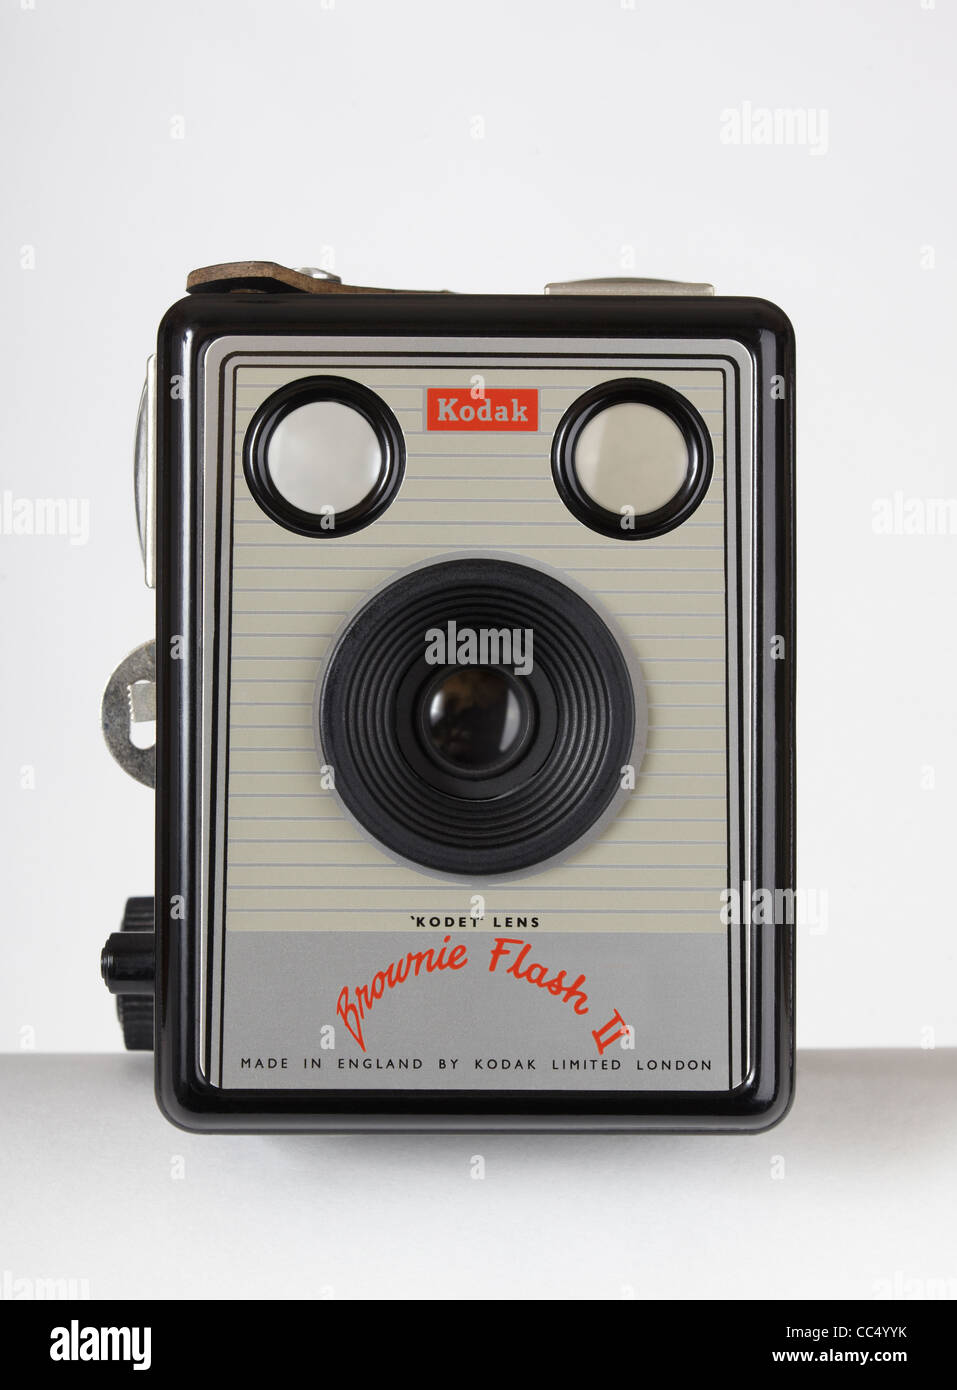 Une vue de face d'un '50 ou '60 2 appareil photo Kodak Brownie film sur un fond blanc. Réglage numérique de faire un visage triste. Banque D'Images